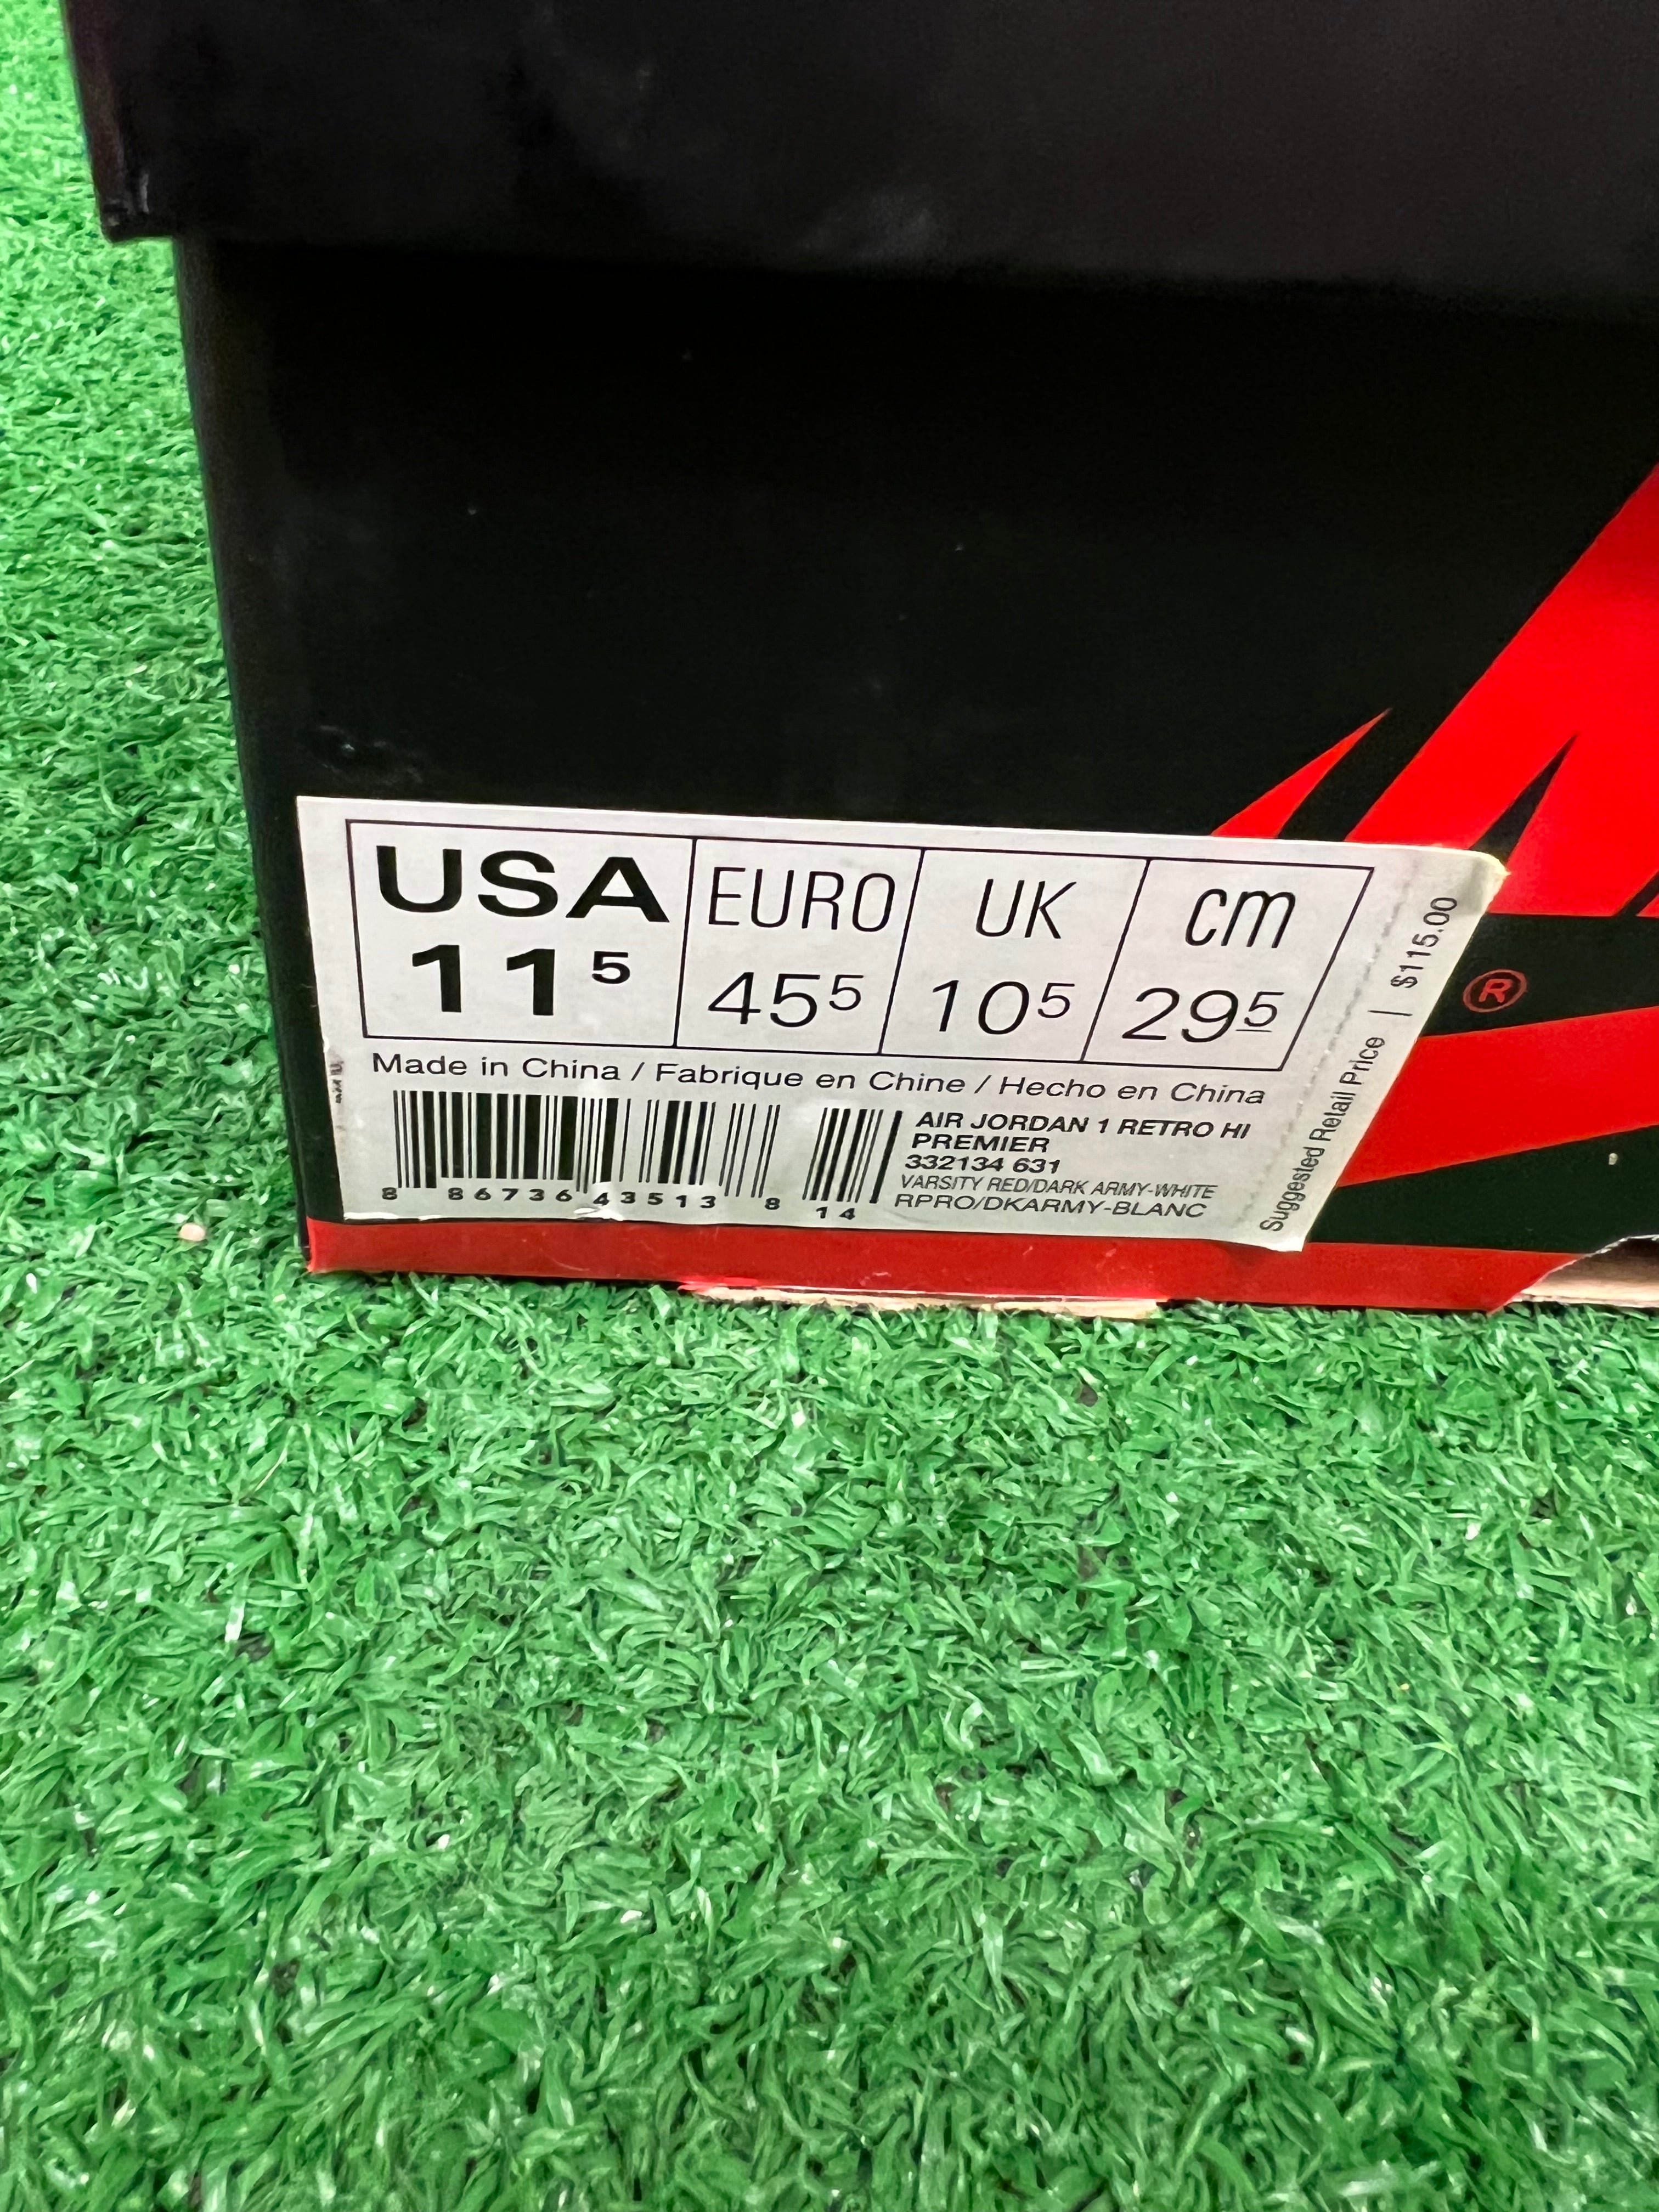 Nike Air Jordan 1 High Retro Red Premium 2013 Men Shoes New With Box